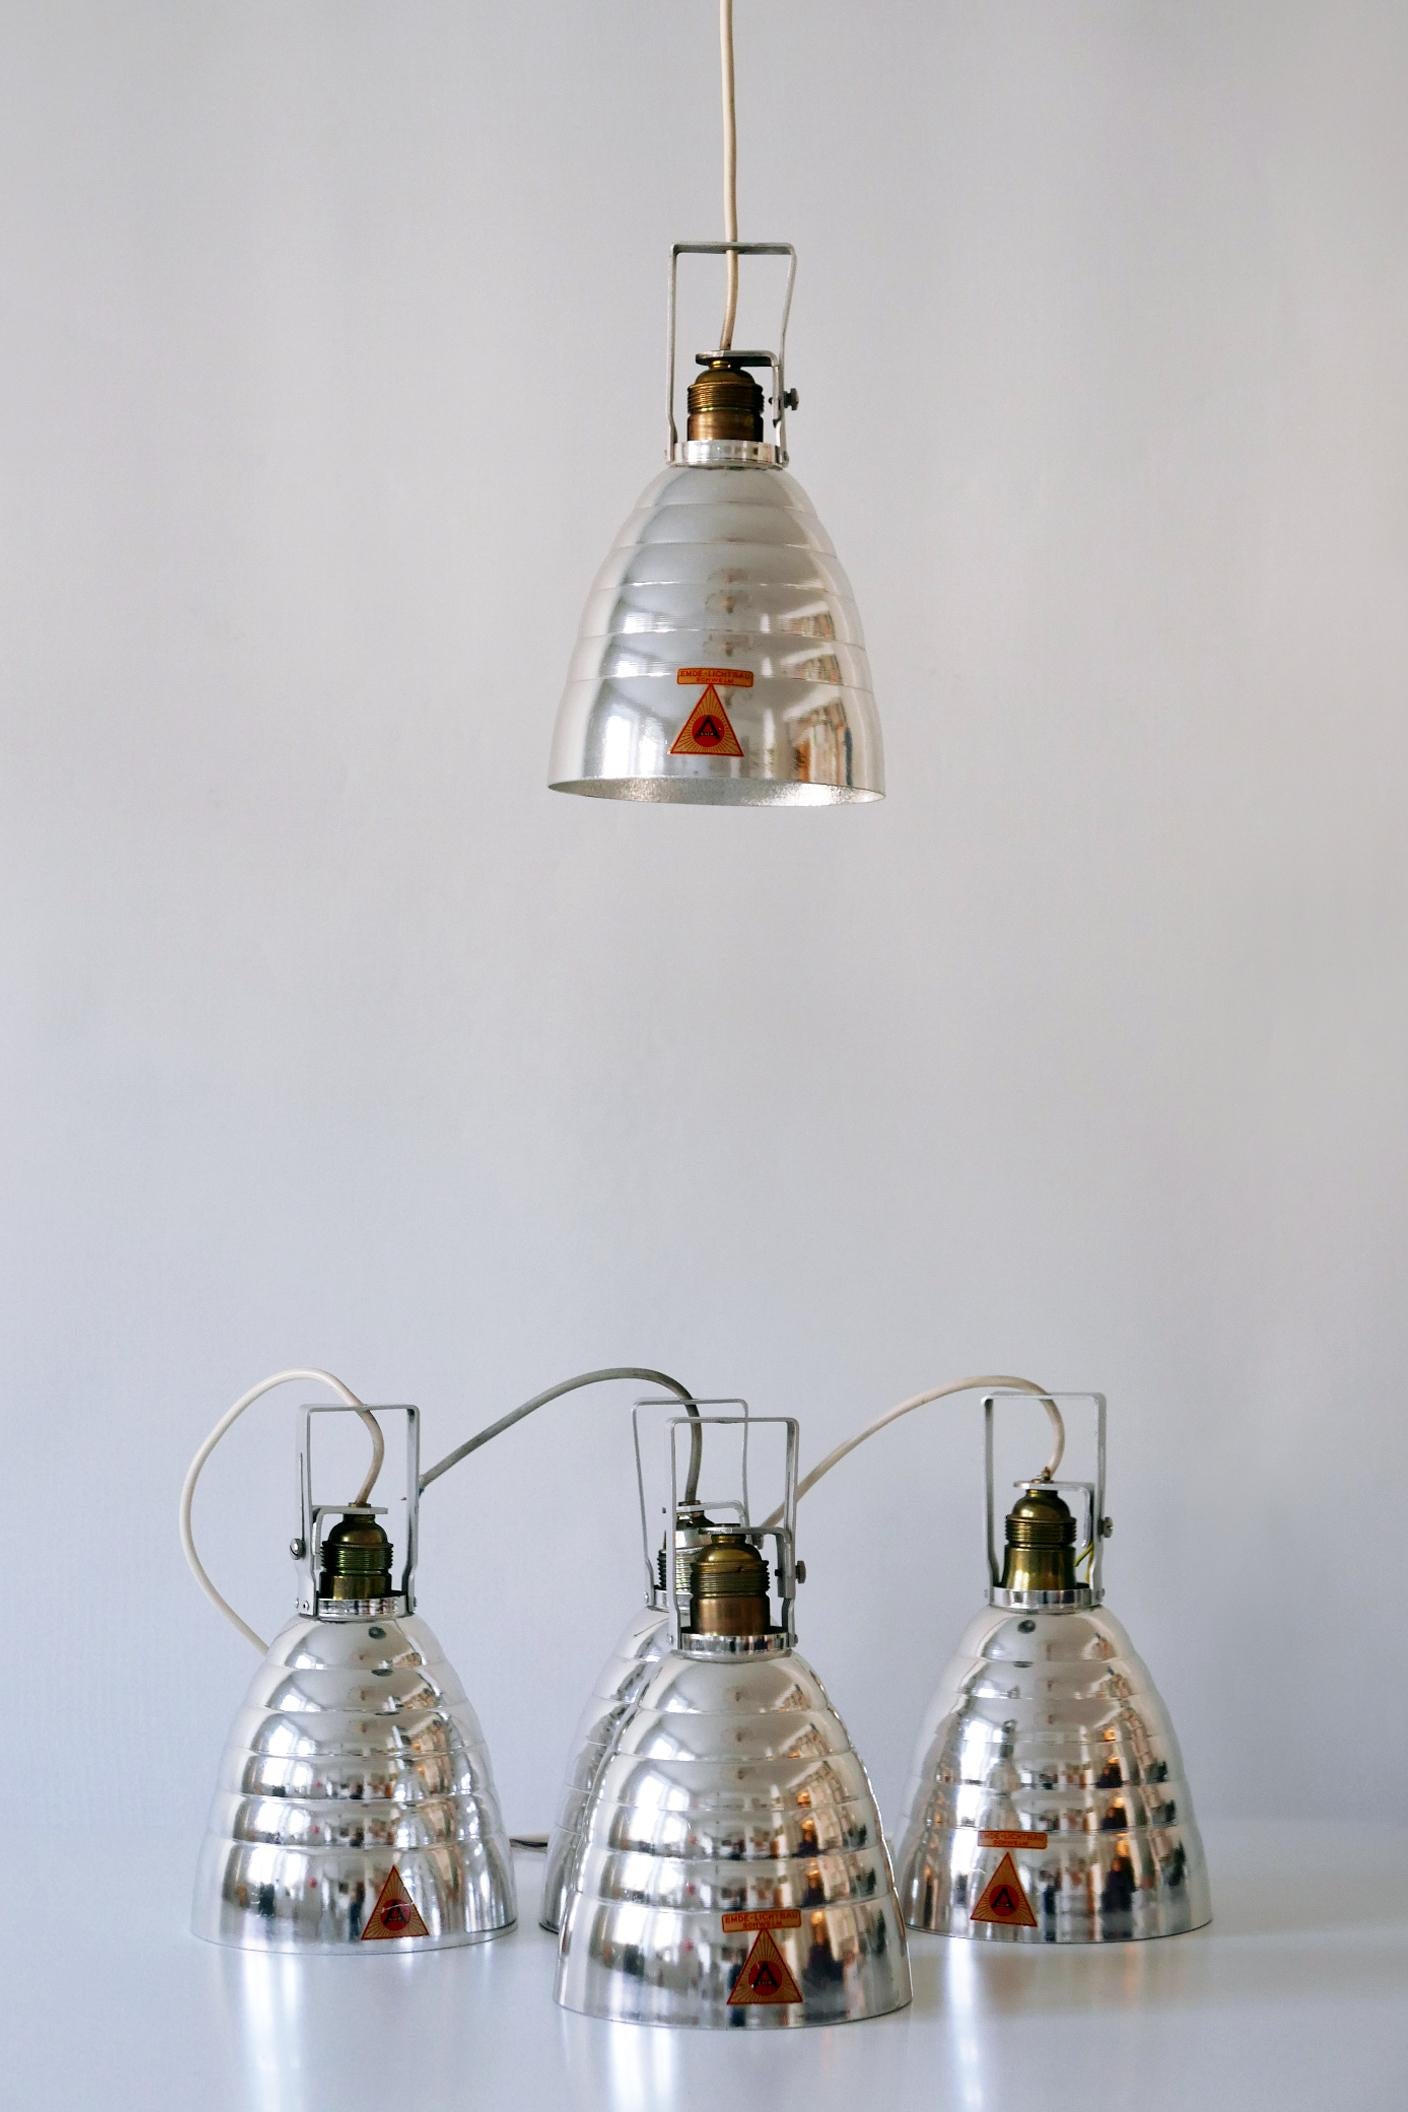 Elegante Mid-Century Modern glänzende Deckenstrahler oder Pendelleuchten von Alux, 1950er Jahre, Deutschland. 

Drei identische Lampen verfügbar!

Jede Lampe ist aus glänzendem Aluminium gefertigt, wird mit 1 x E27 / E26 Edison Schraubfassung